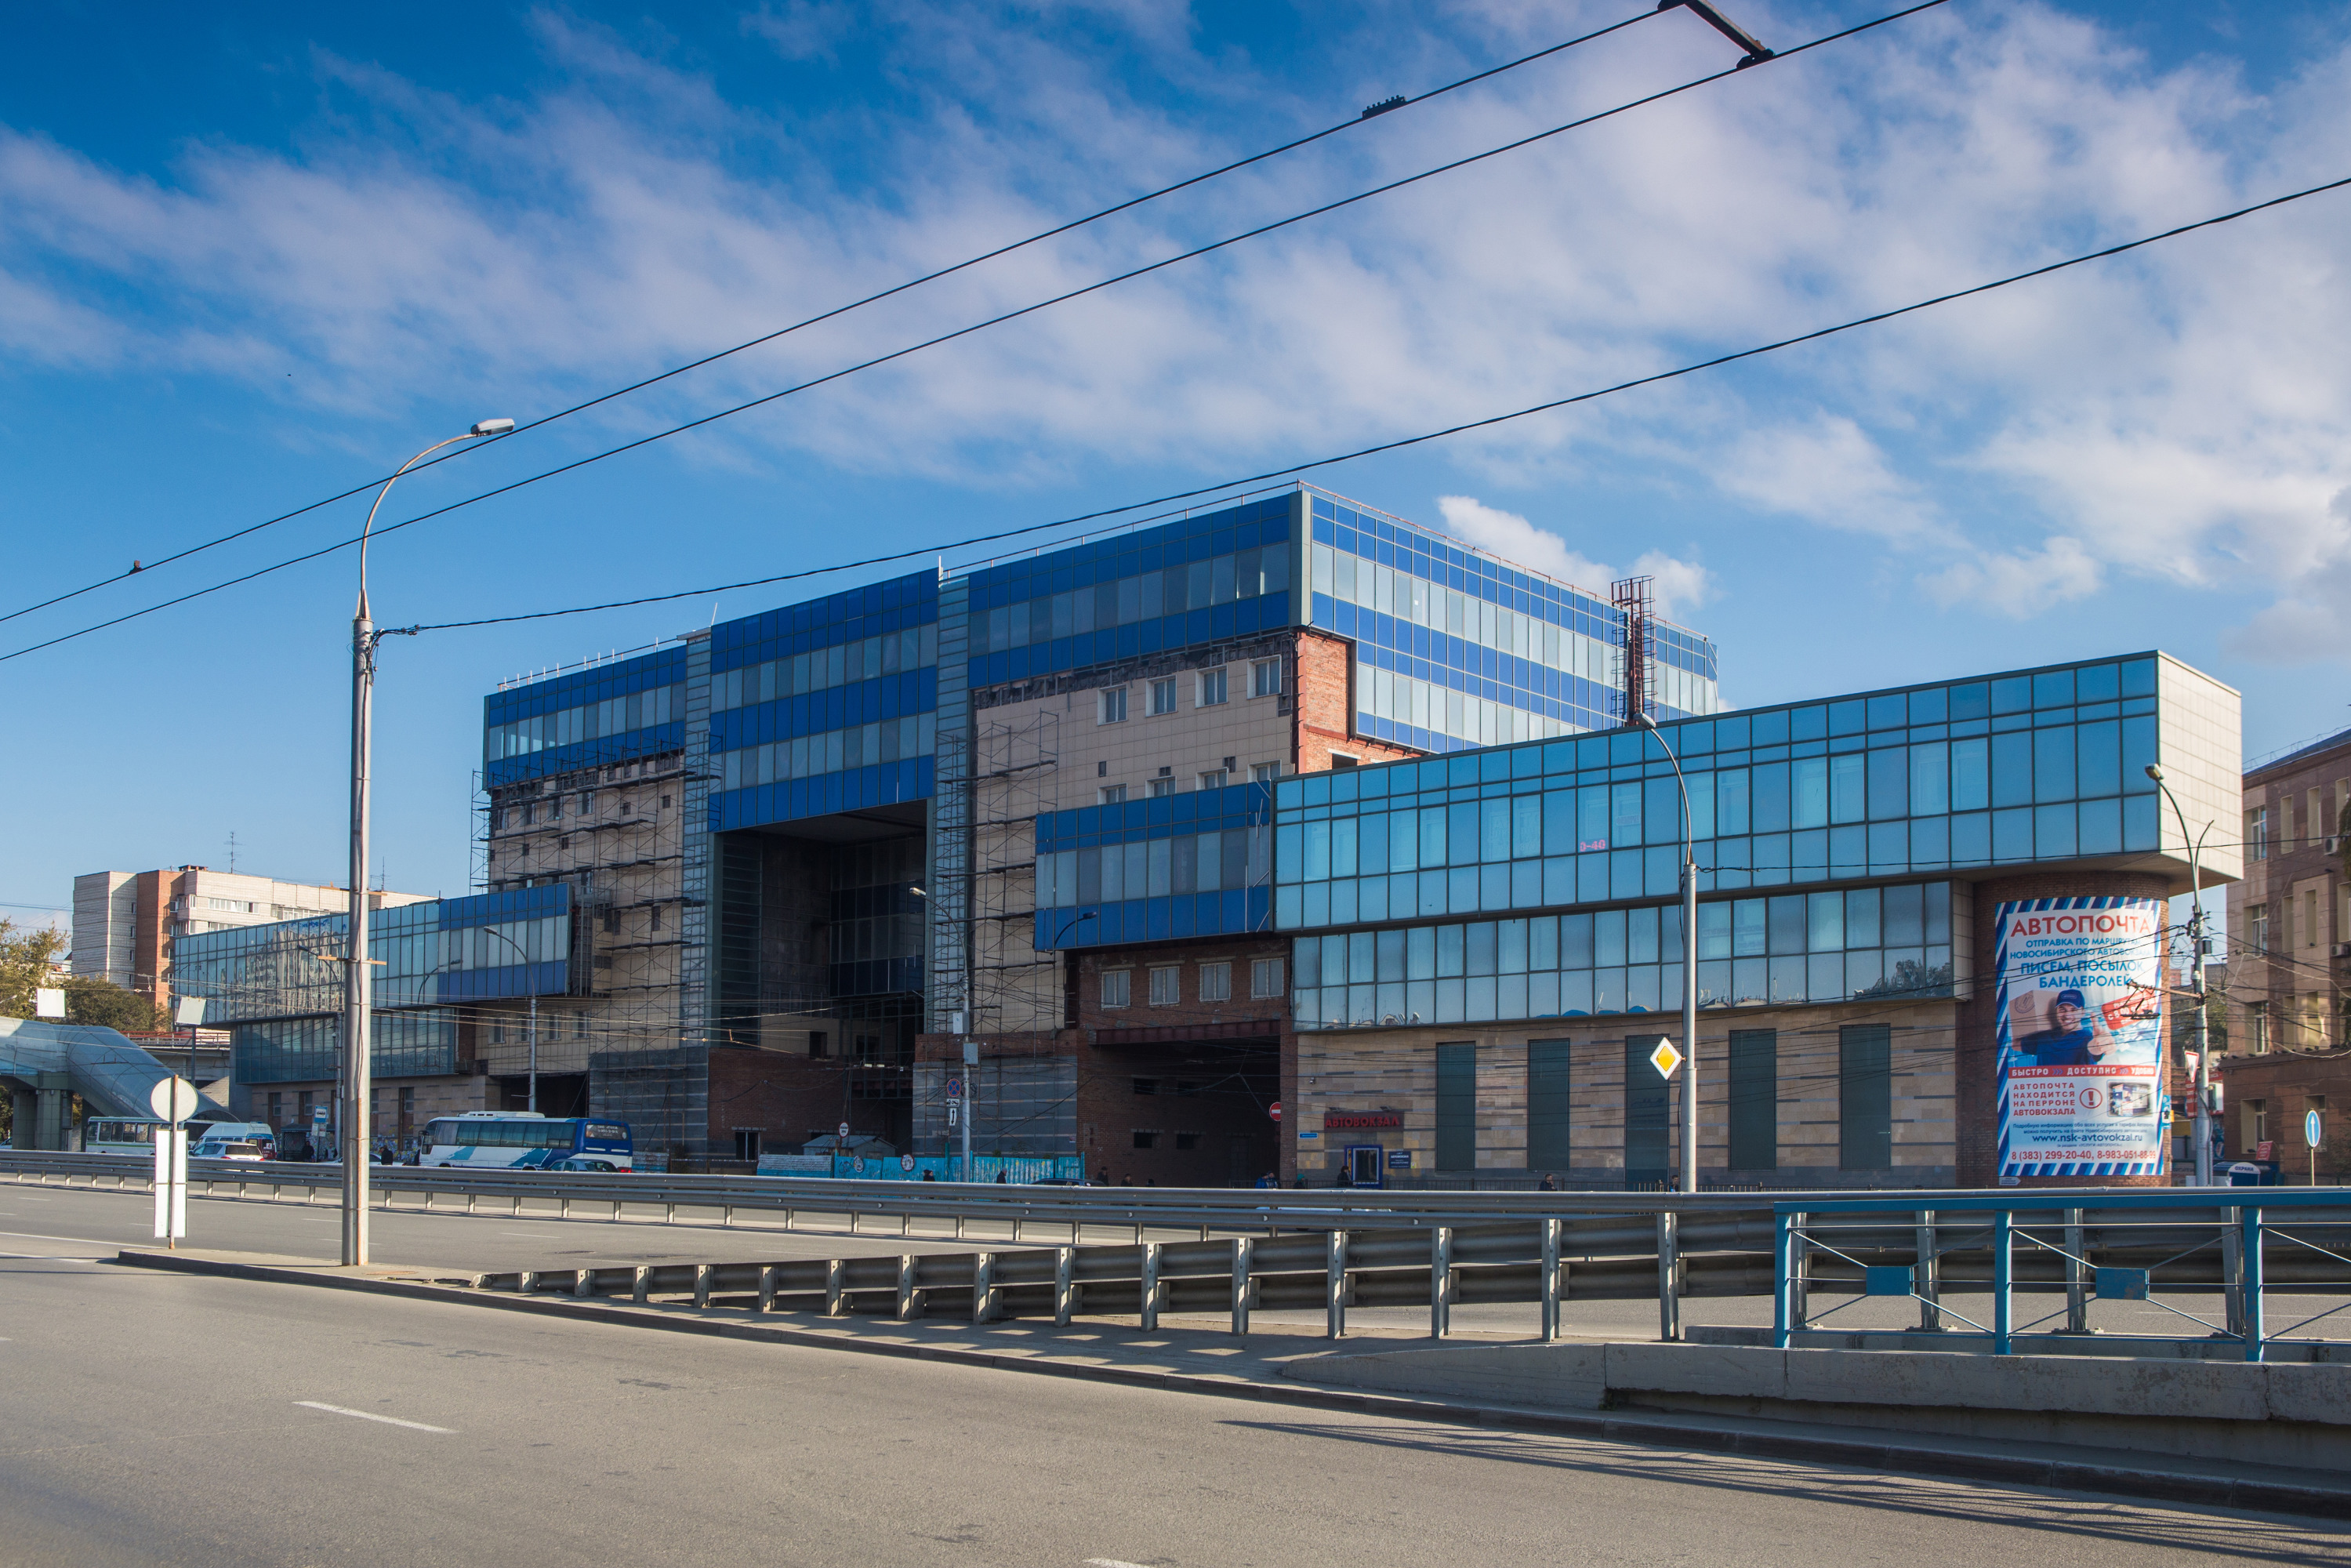 автовокзал в санкт петербурге